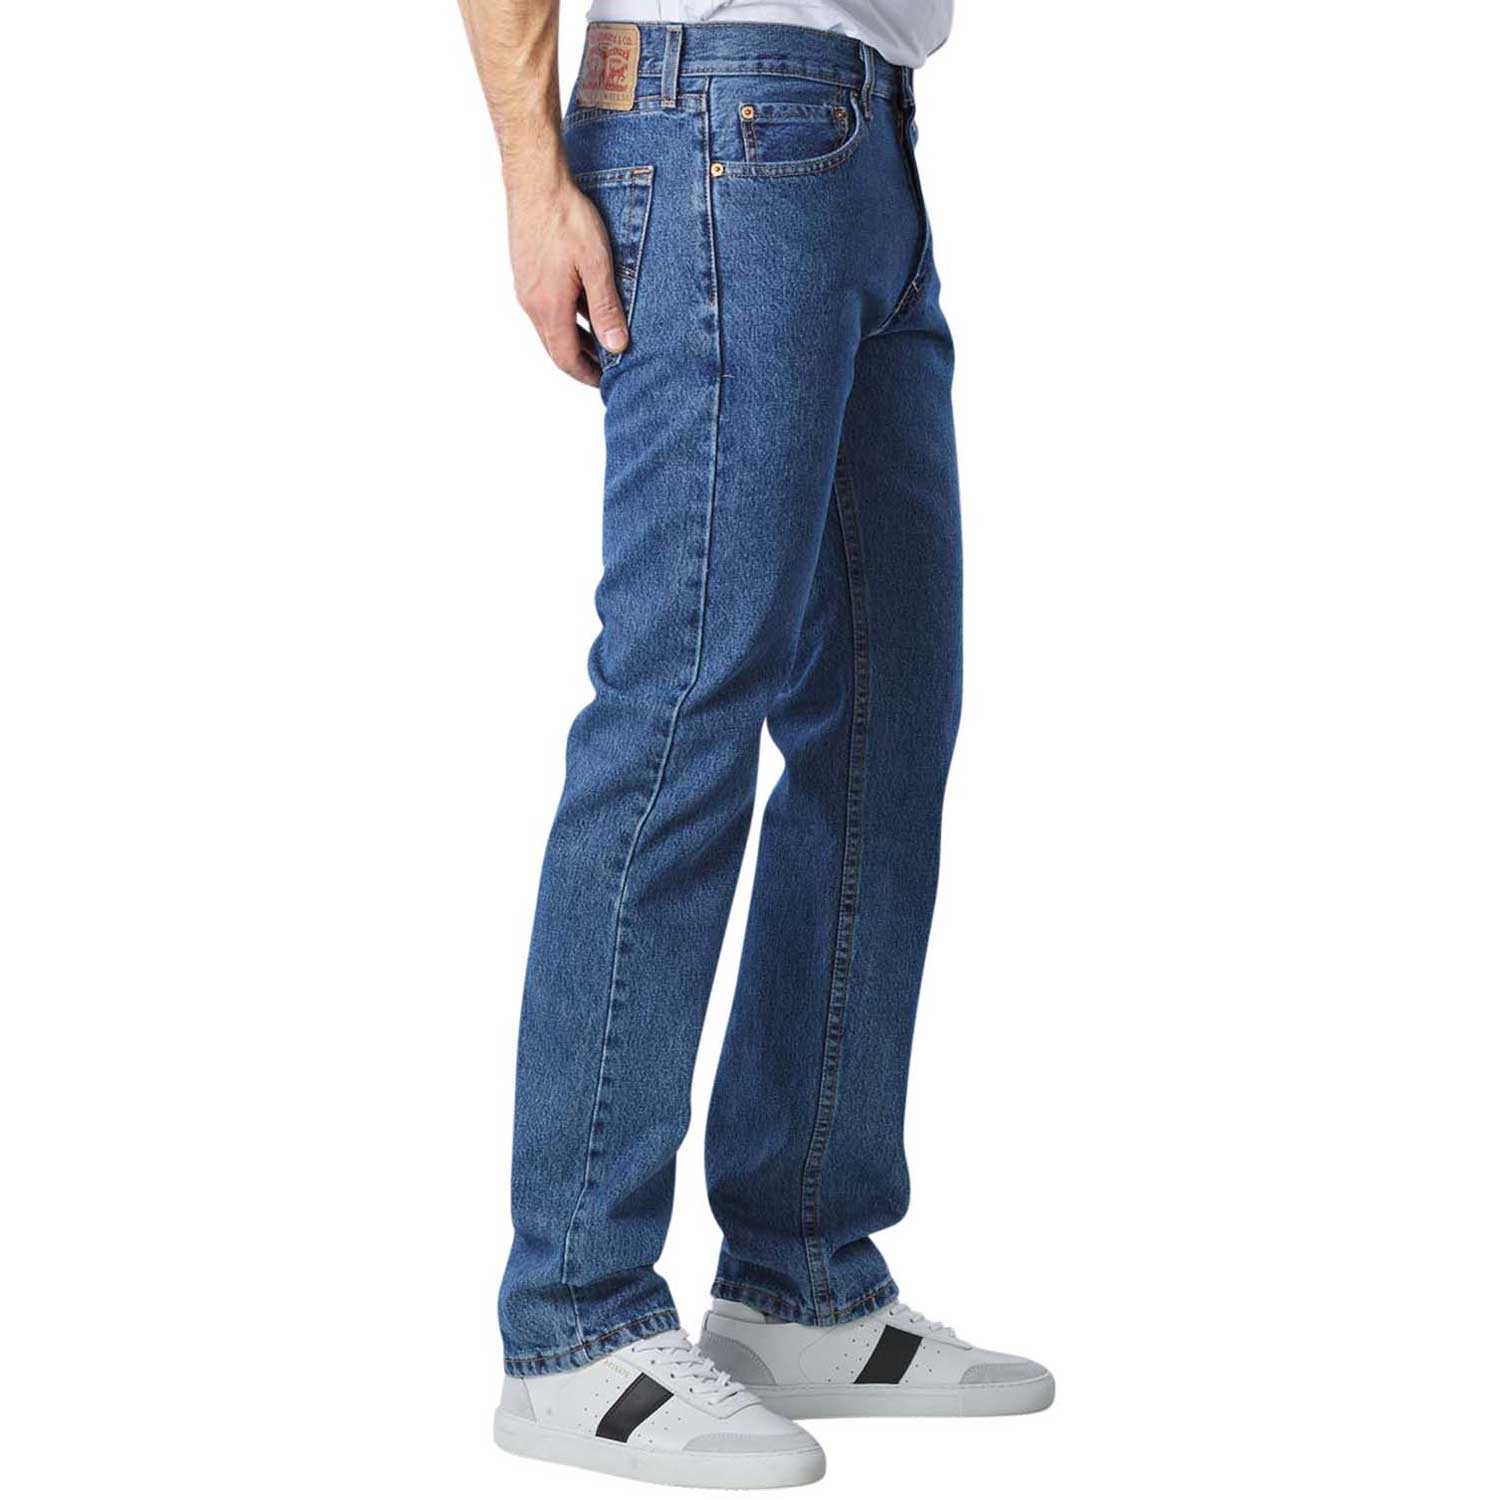 Мужские джинсы Levis 505 Medium Stonewash, 005054891 Левис, Ливайс США